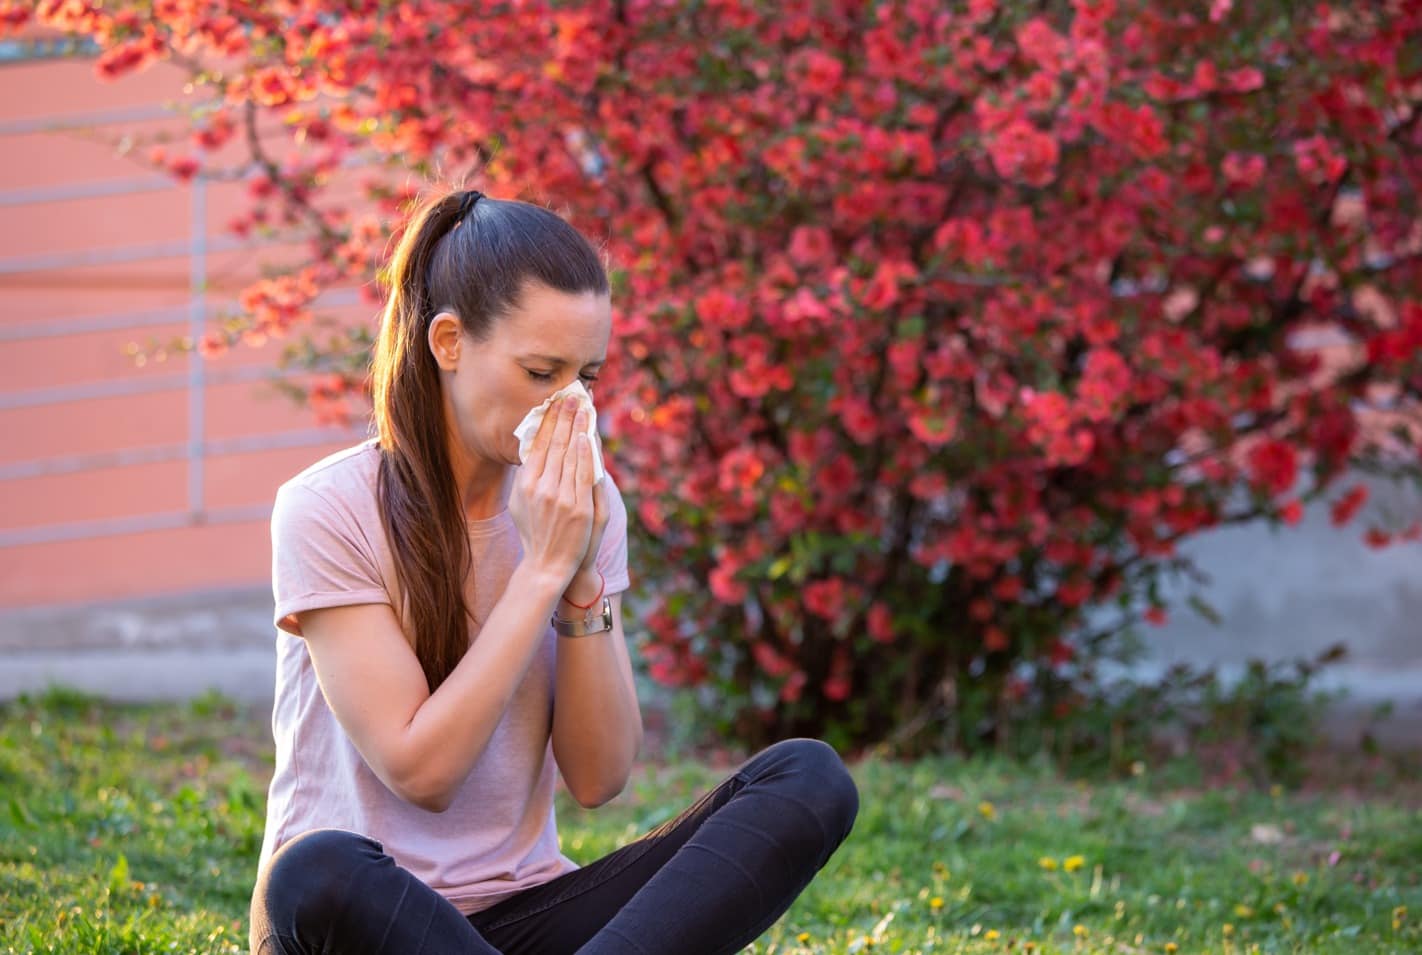 Managing seasonal allergies in spring and summer